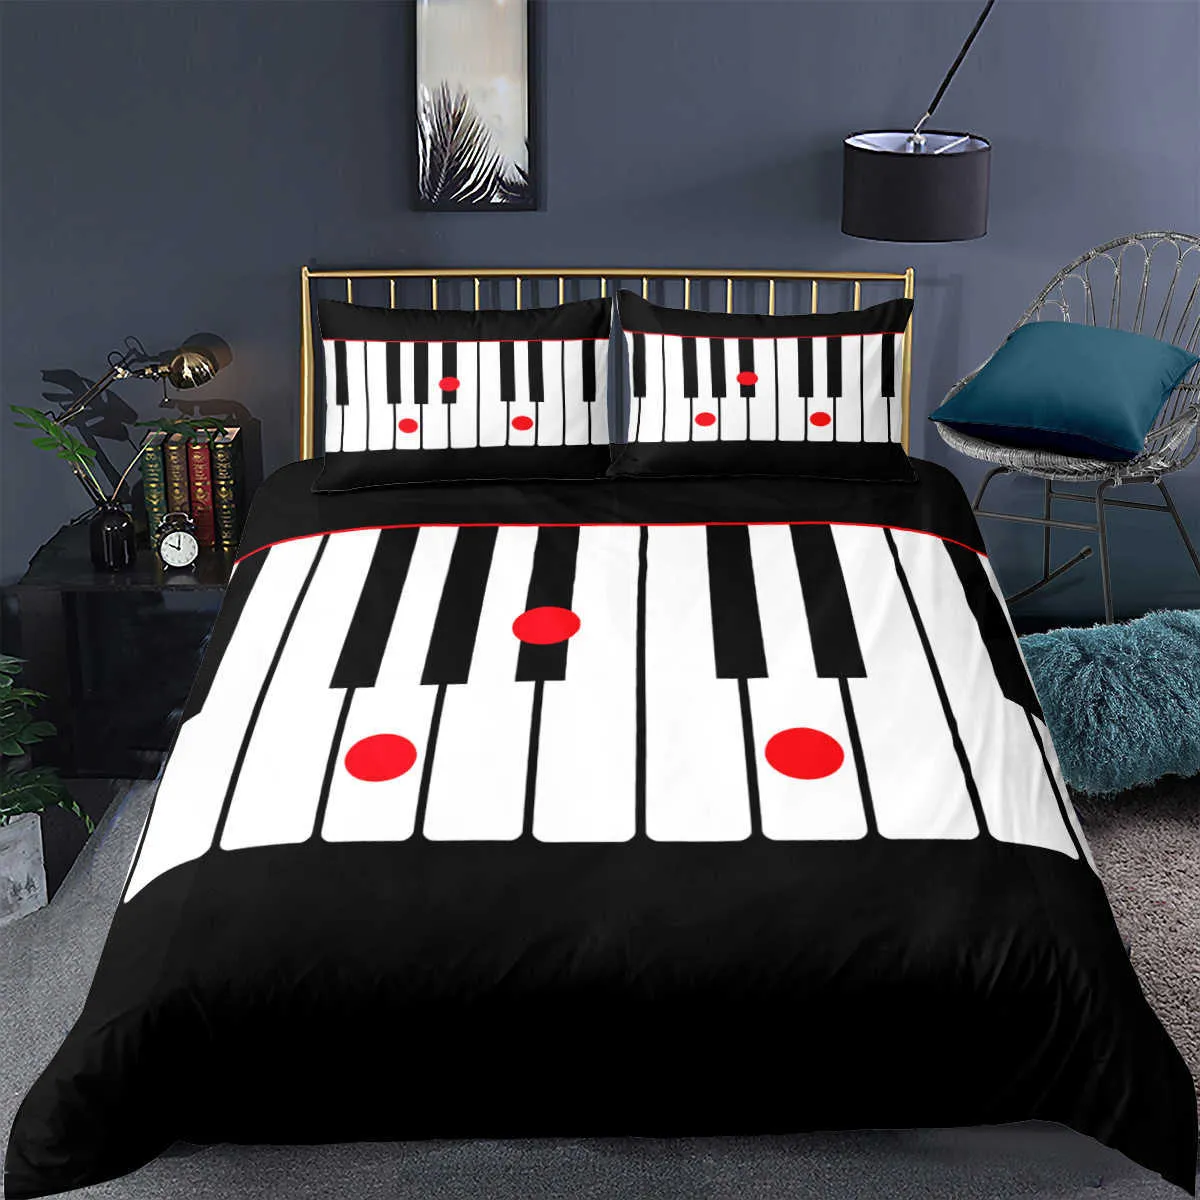 ピアノの音楽ノート印刷された寝具セット3Dラグジュアリーベッドセット掛け布団大人の子供用布団カバー枕カバーツインクイーンキングサイズH0913241O